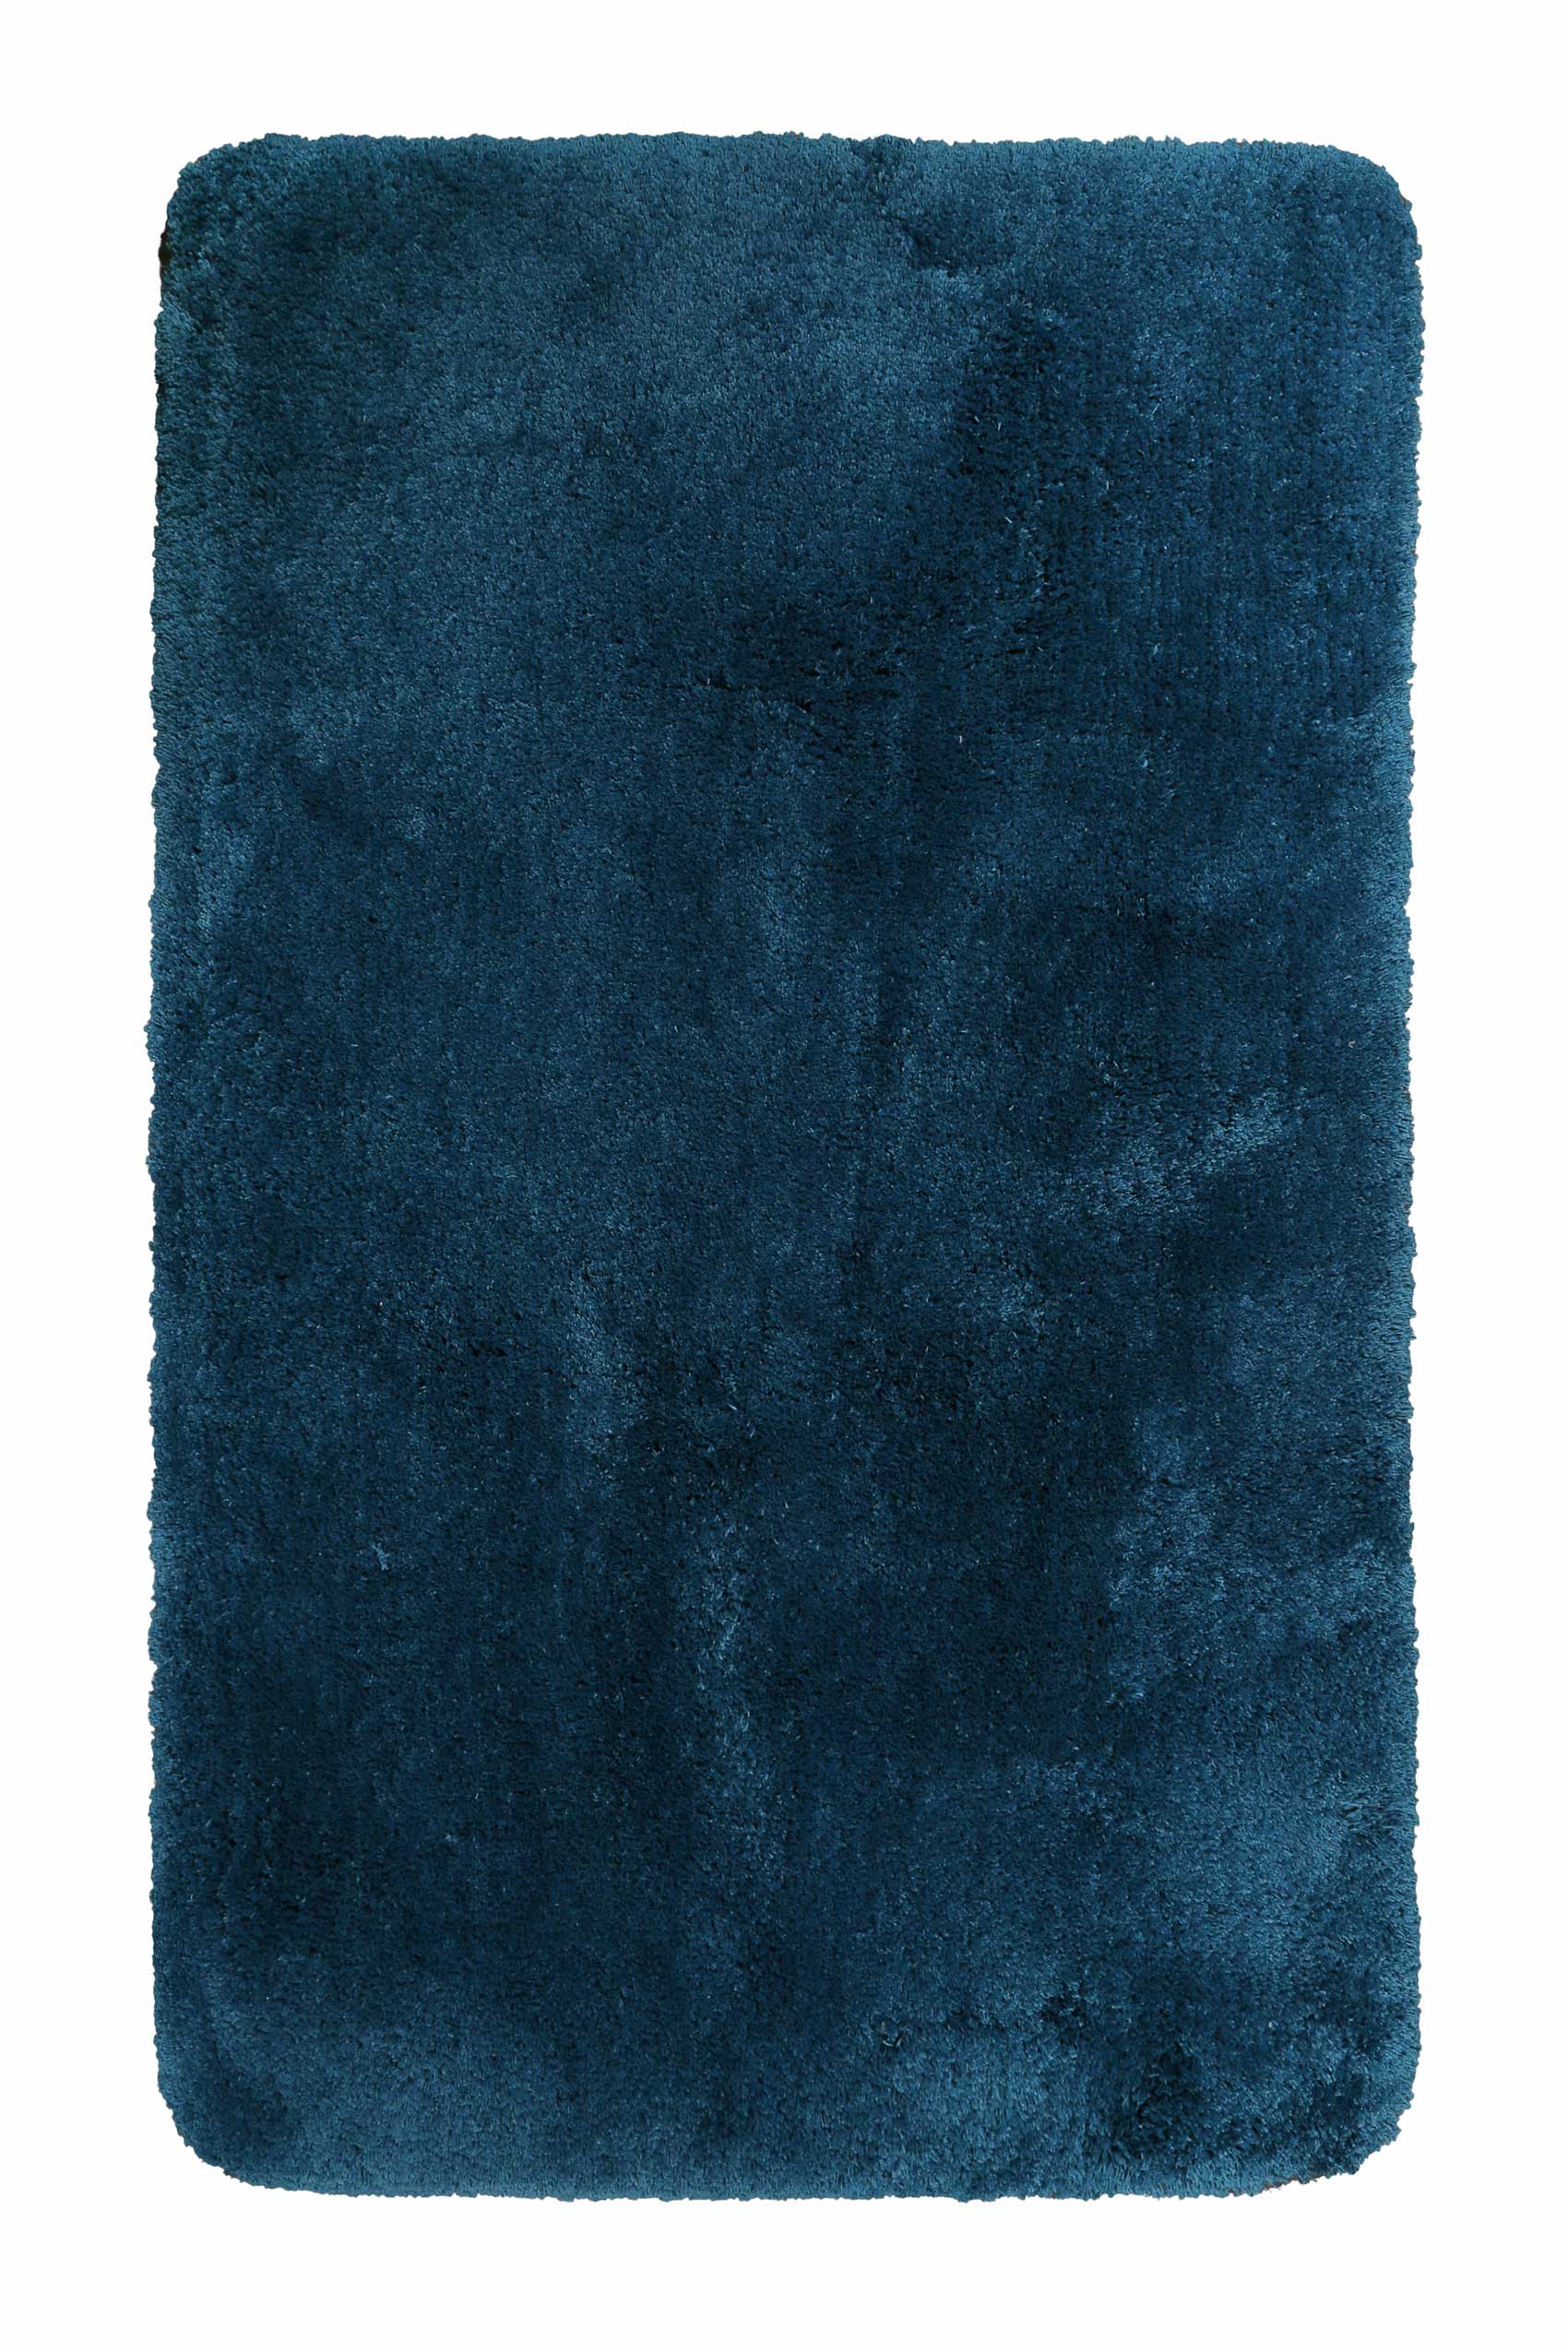 Tappeto da bagno in microfibra antiscivolo Blu 55x65 Porto azzurro